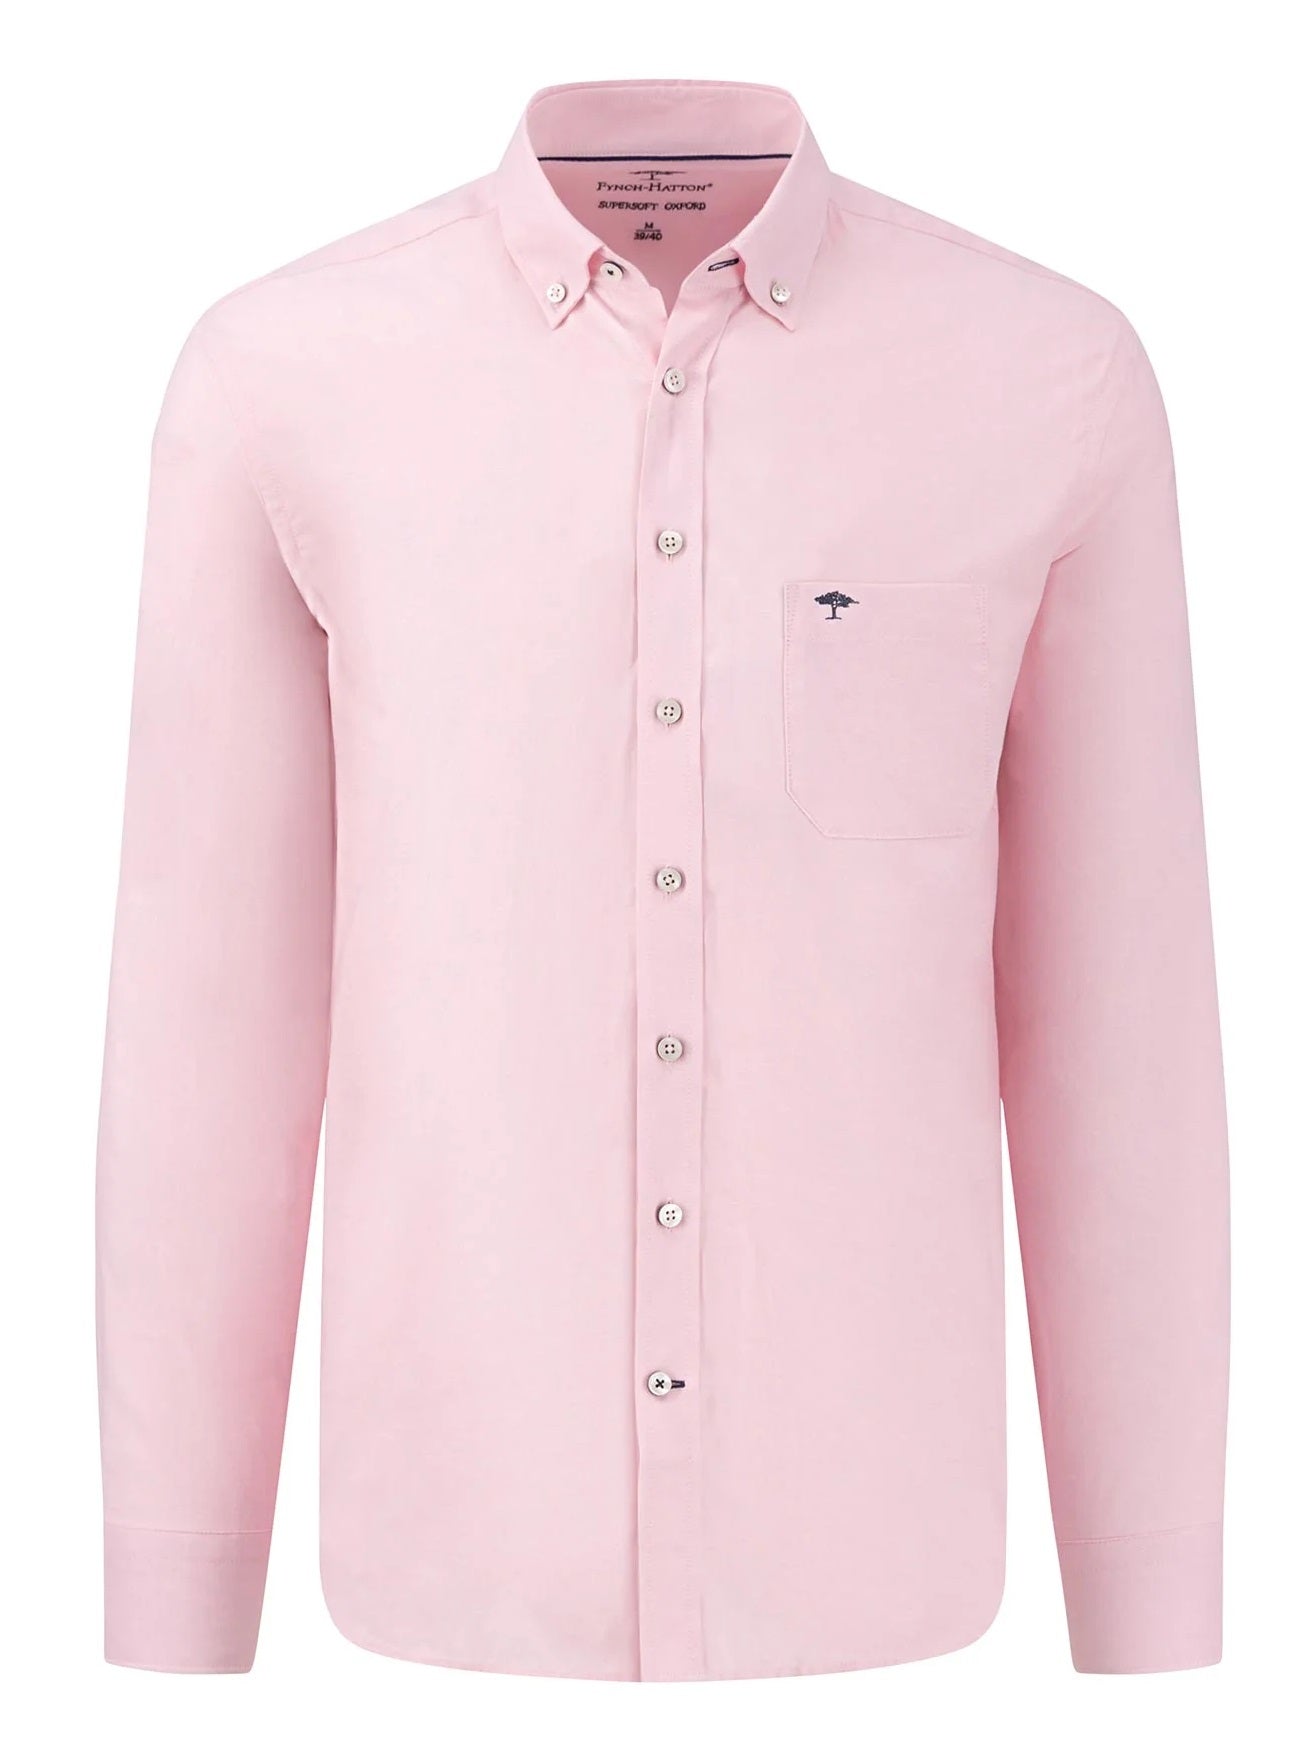 FYNCH HATTON Oxford Shirt - Men's Soft Cotton – Pink